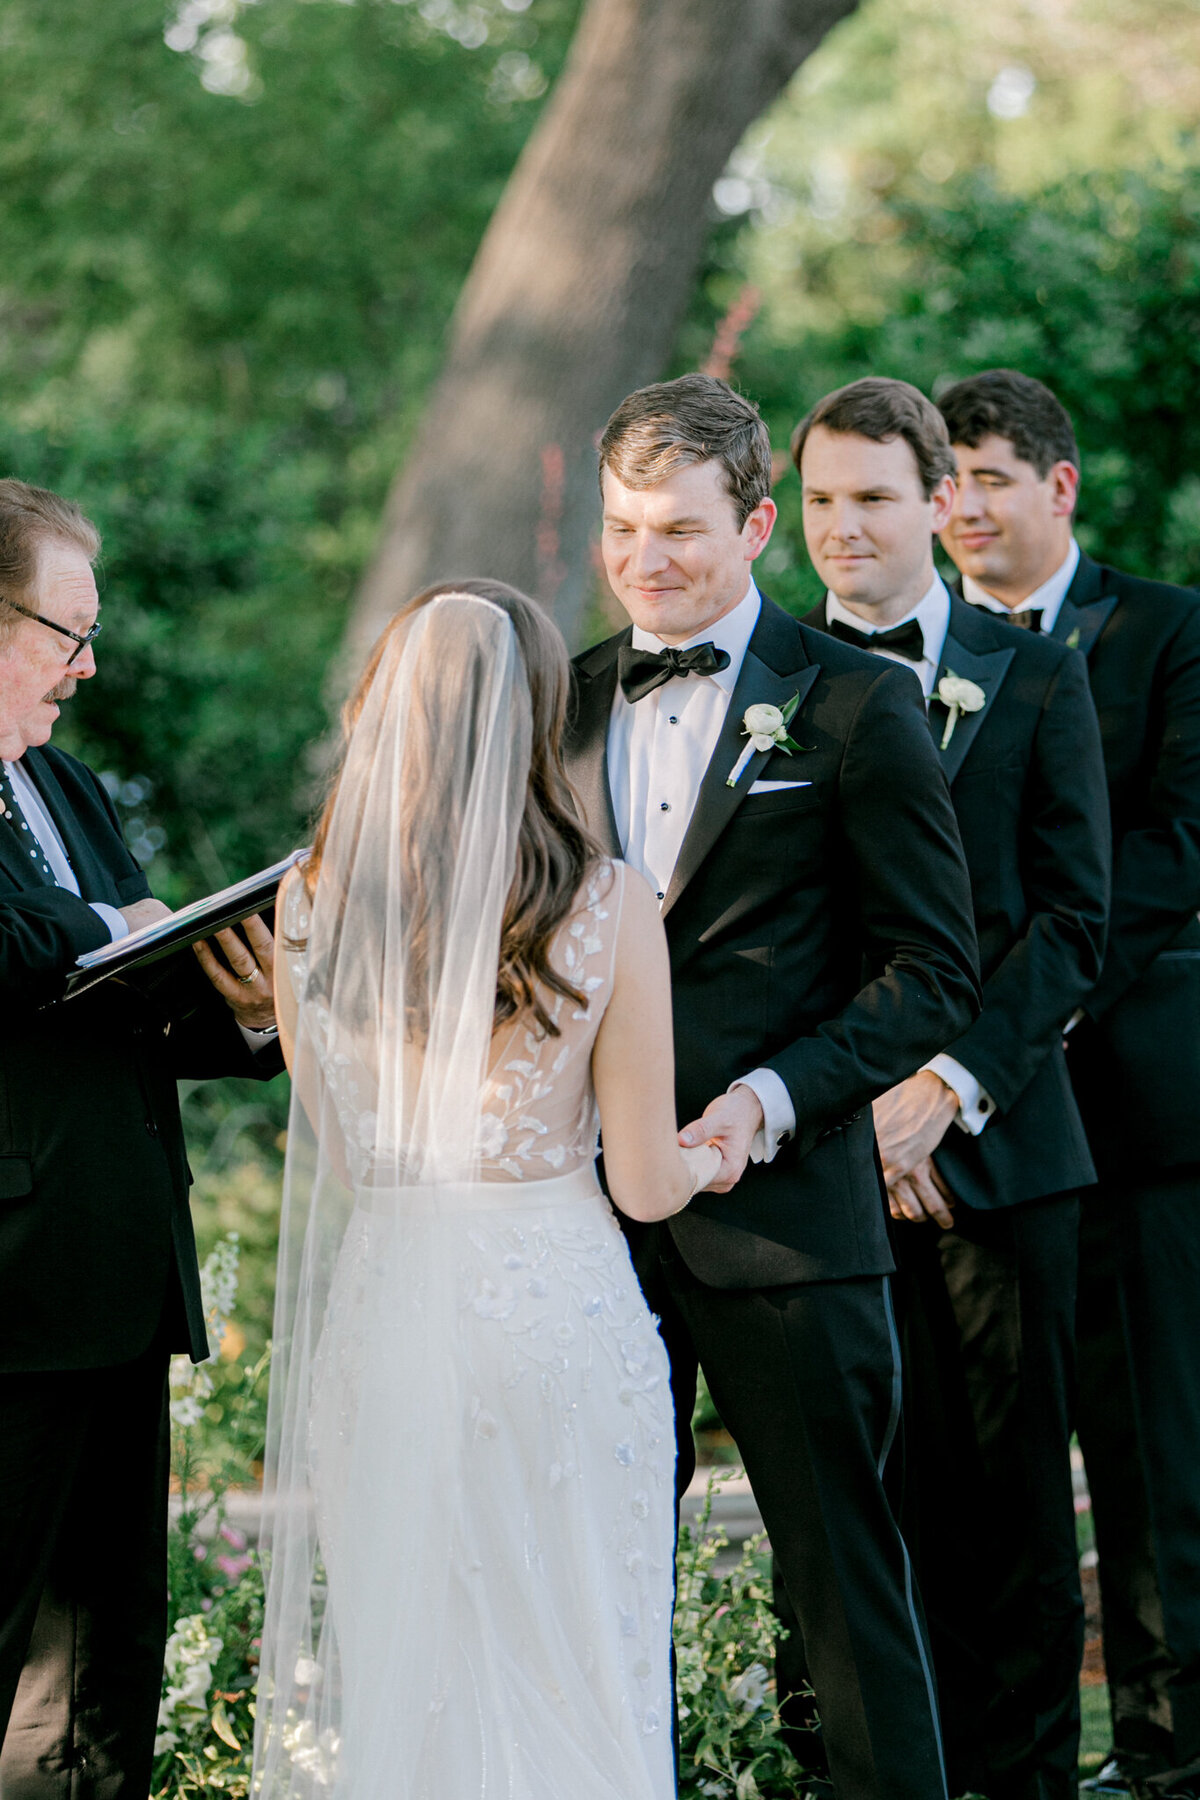 Gena & Matt's Wedding at the Dallas Arboretum | Dallas Wedding Photographer | Sami Kathryn Photography-145